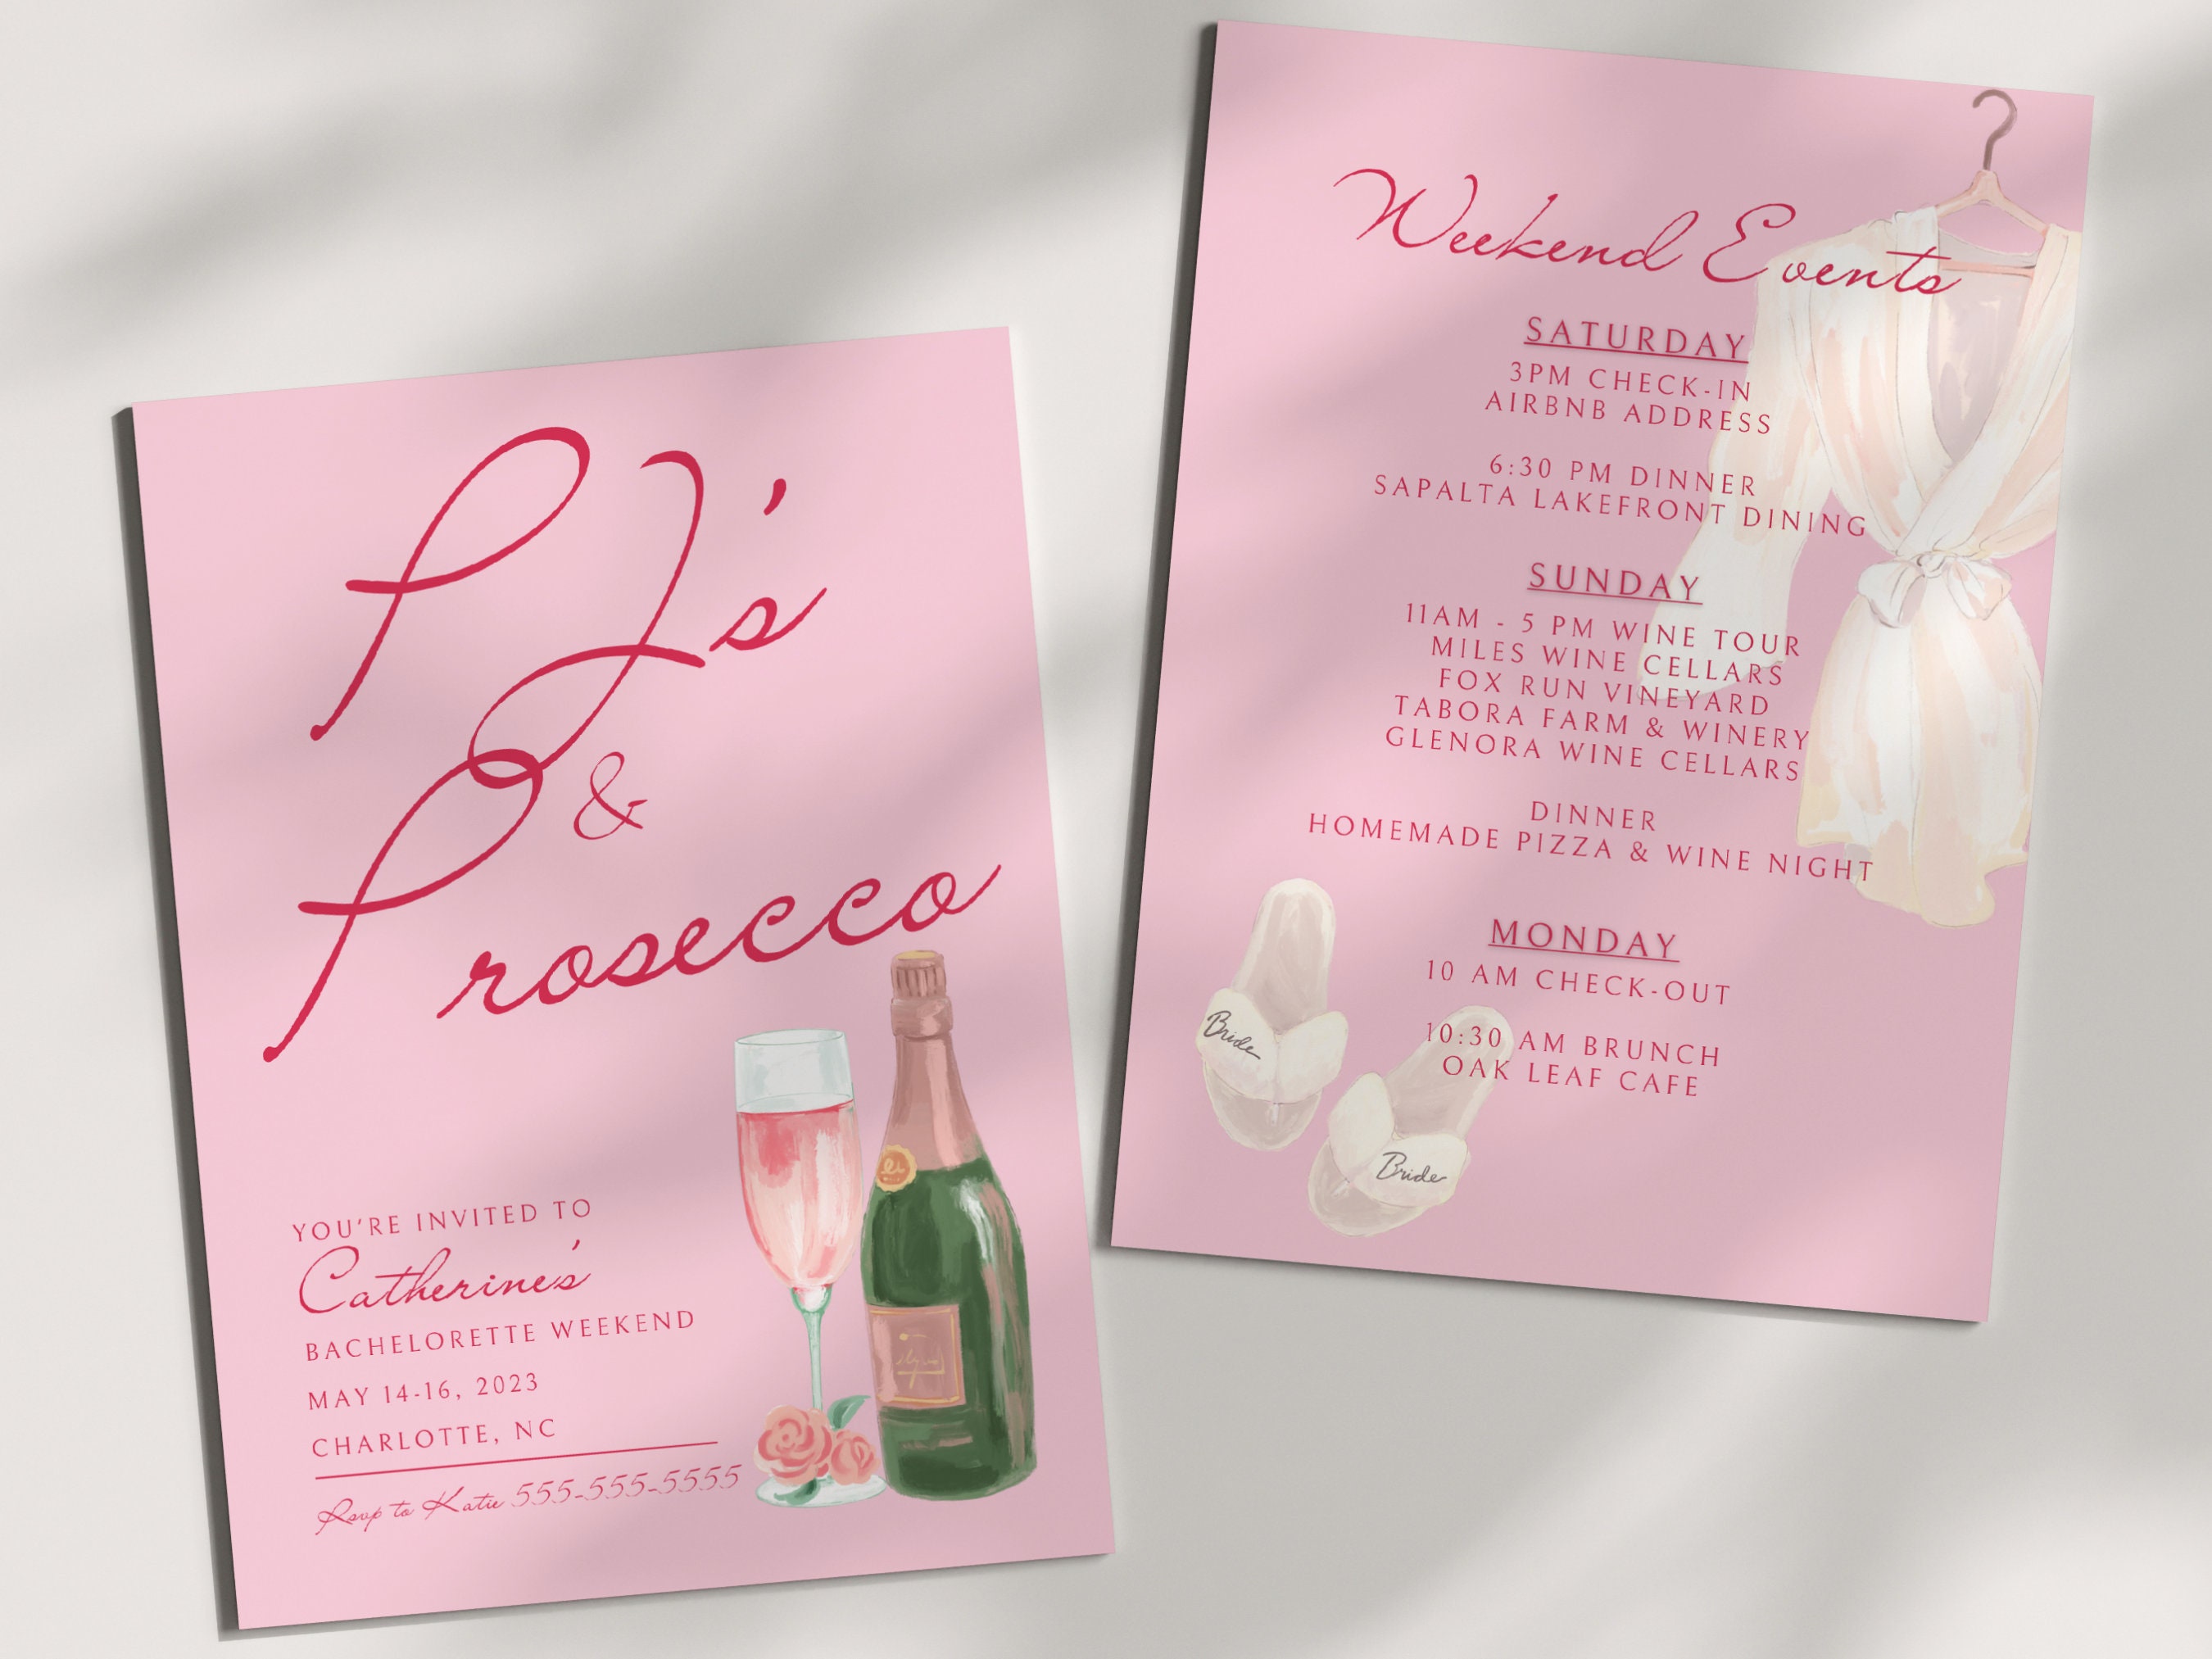 Pjs and Prosecco Bachelorette Invitation Template Champagne image